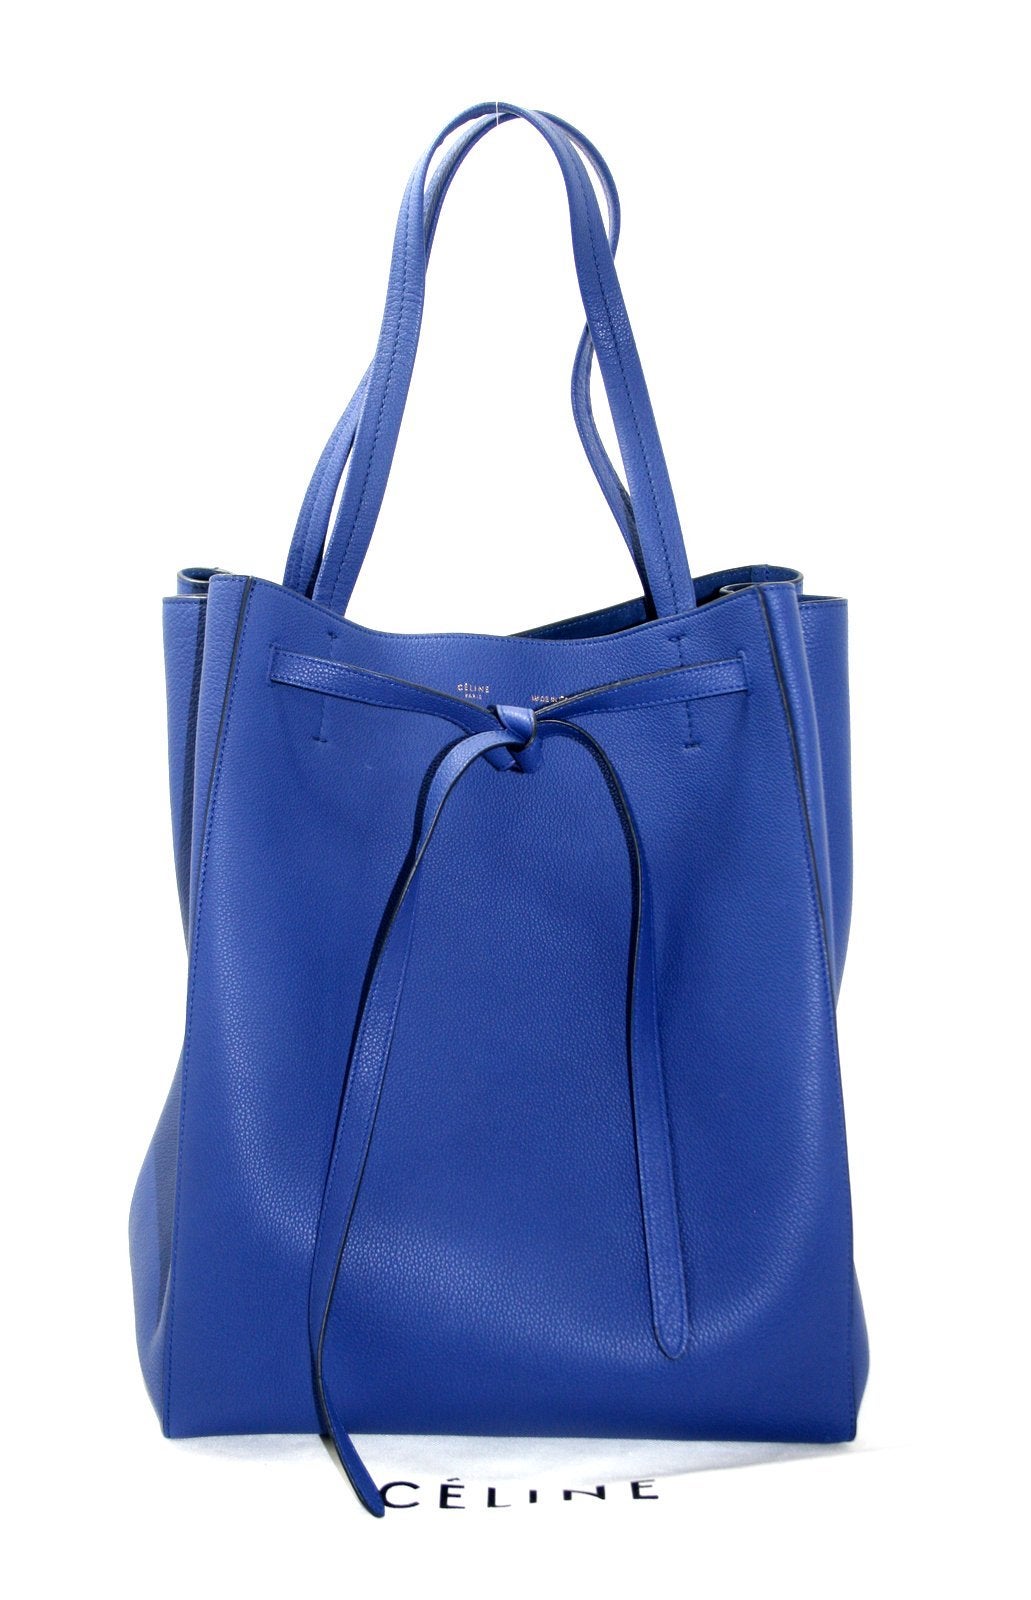 Celine Blue Leather Medium Cabas Phantom Tote Bag with Belt at 1stdibs  